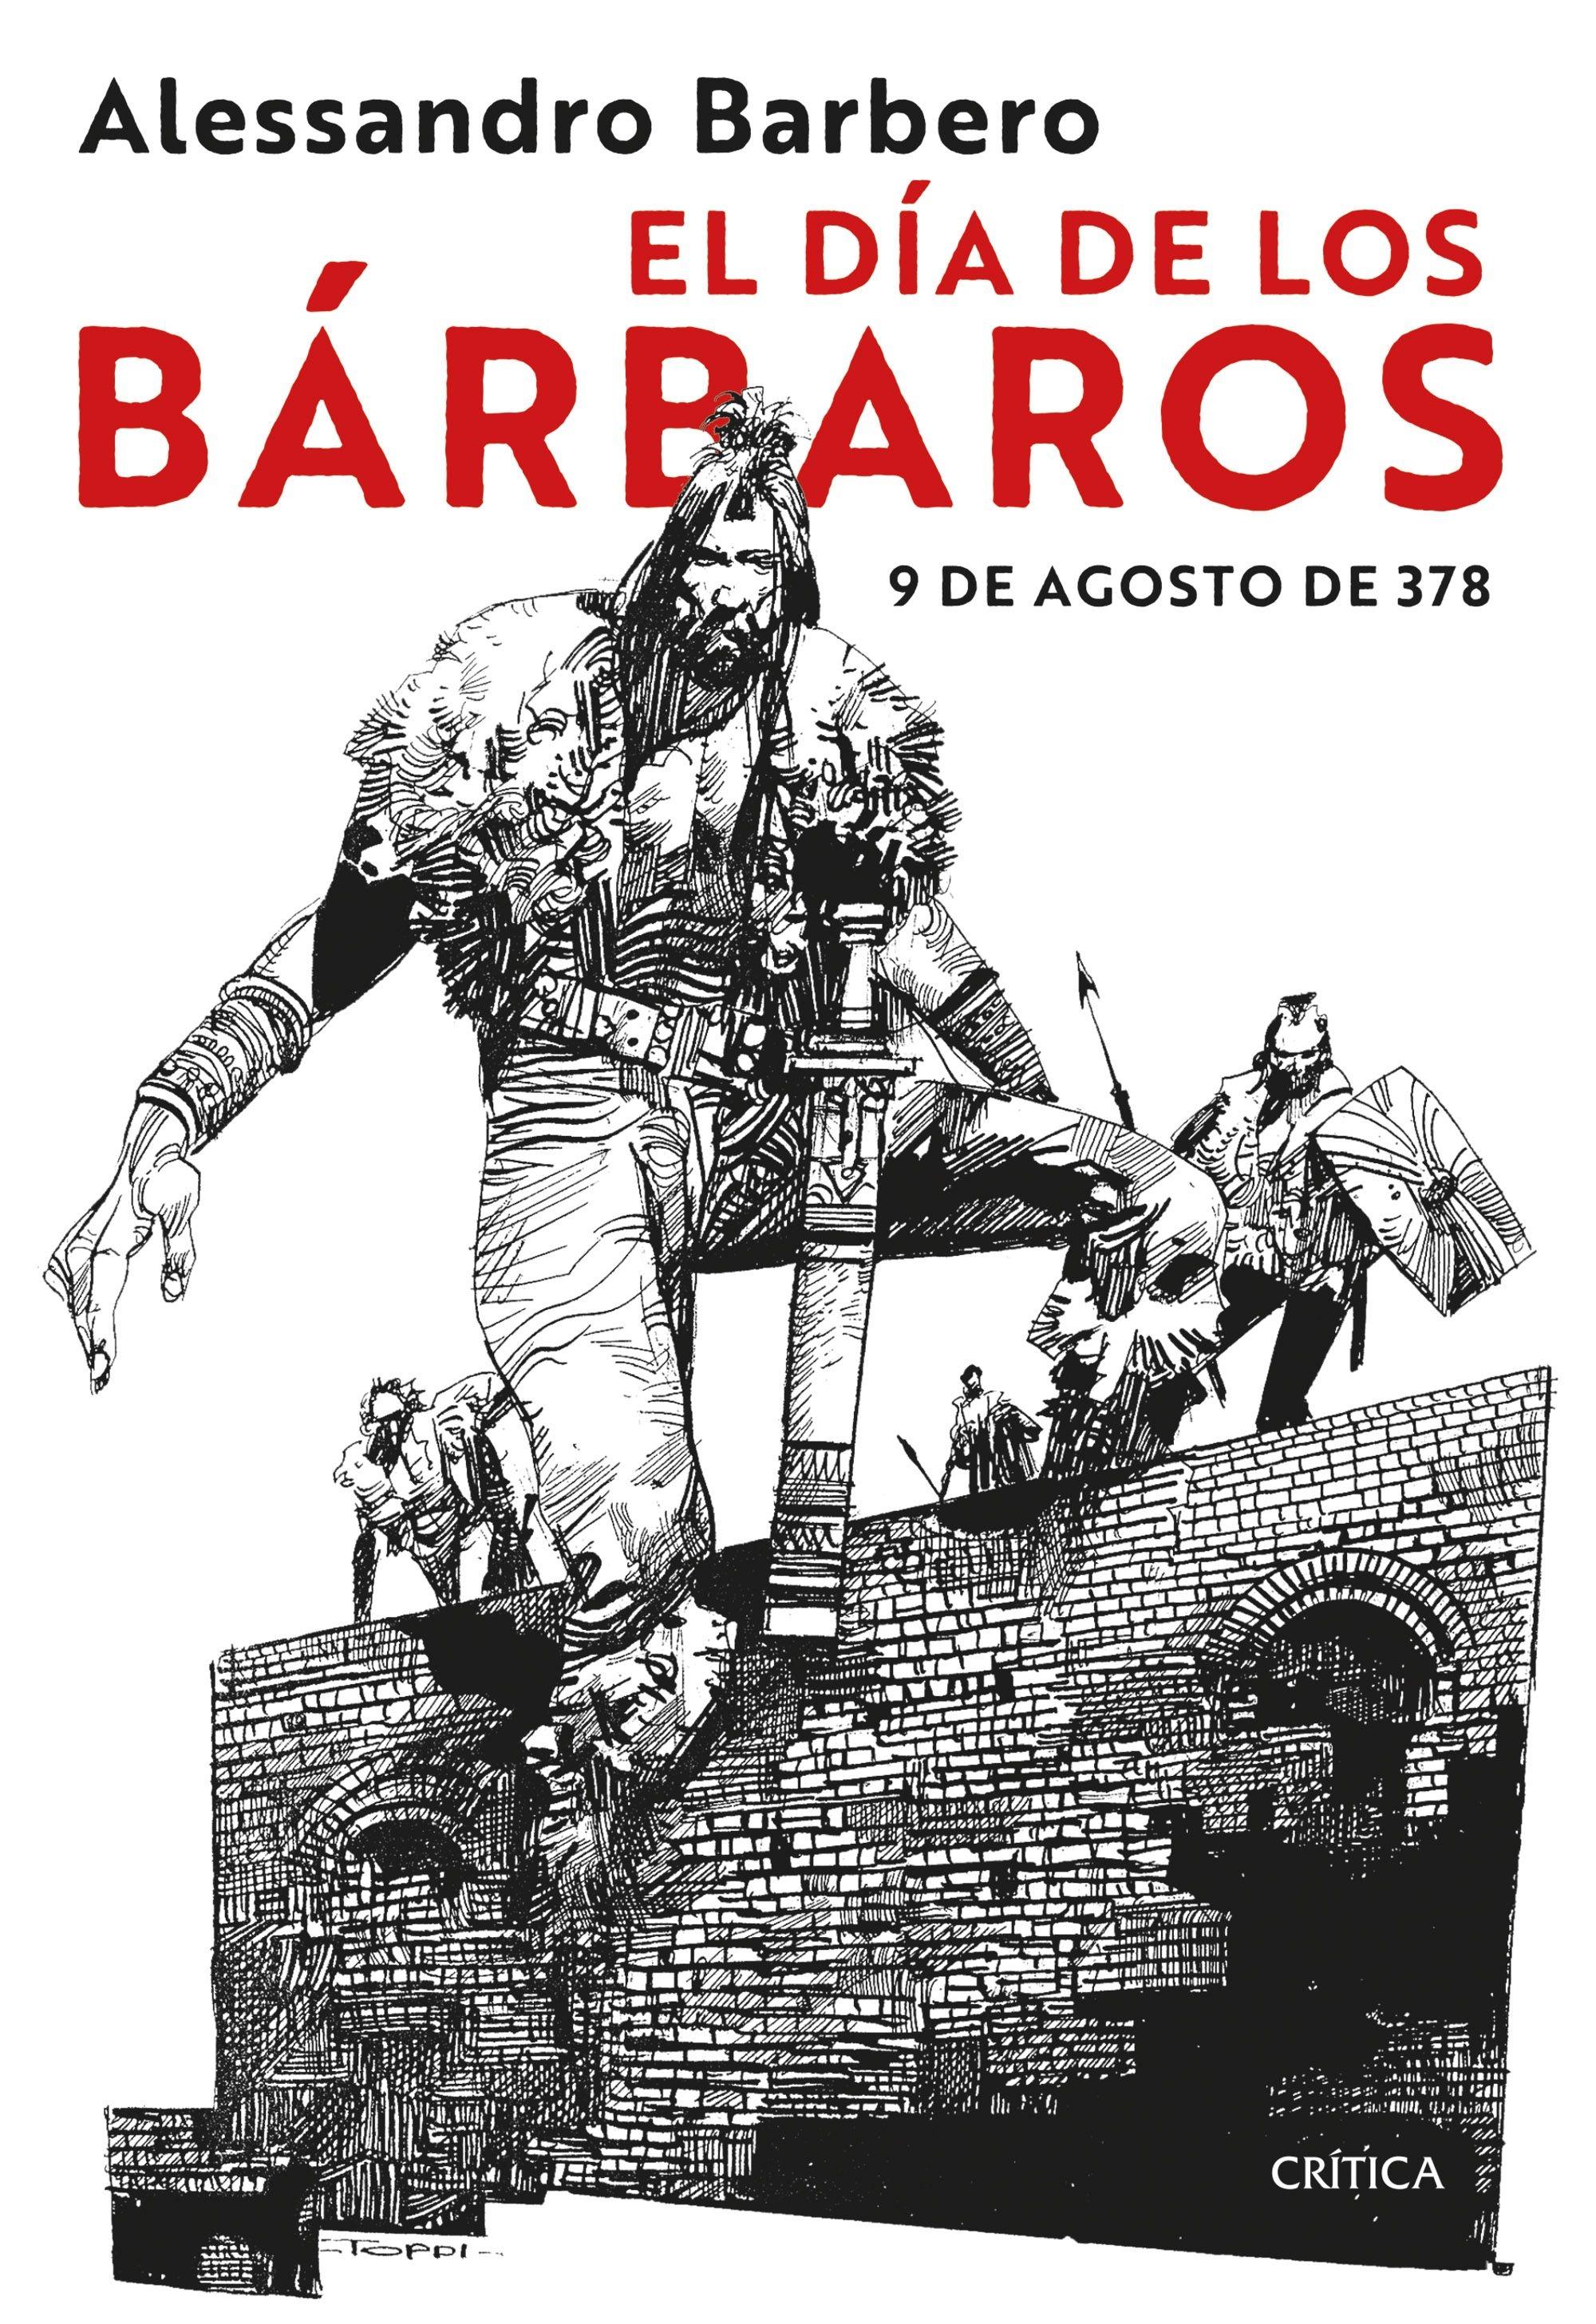 El Día de los Bárbaros "9 de Agosto de 378". 